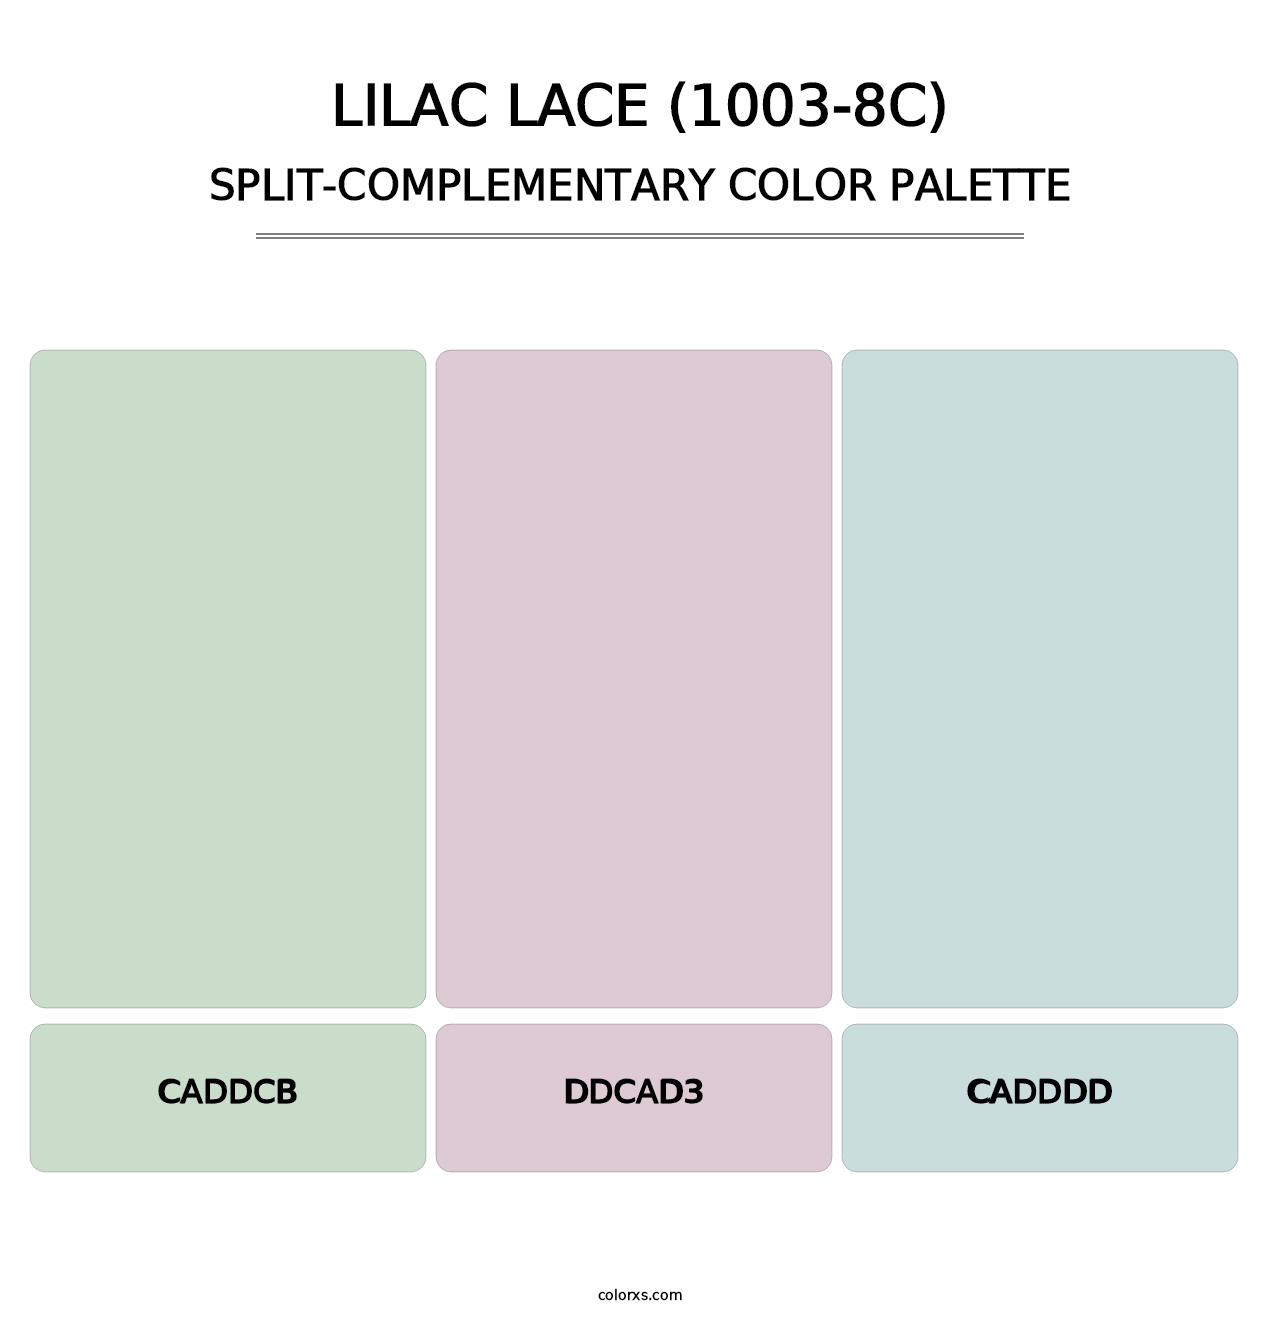 Lilac Lace (1003-8C) - Split-Complementary Color Palette